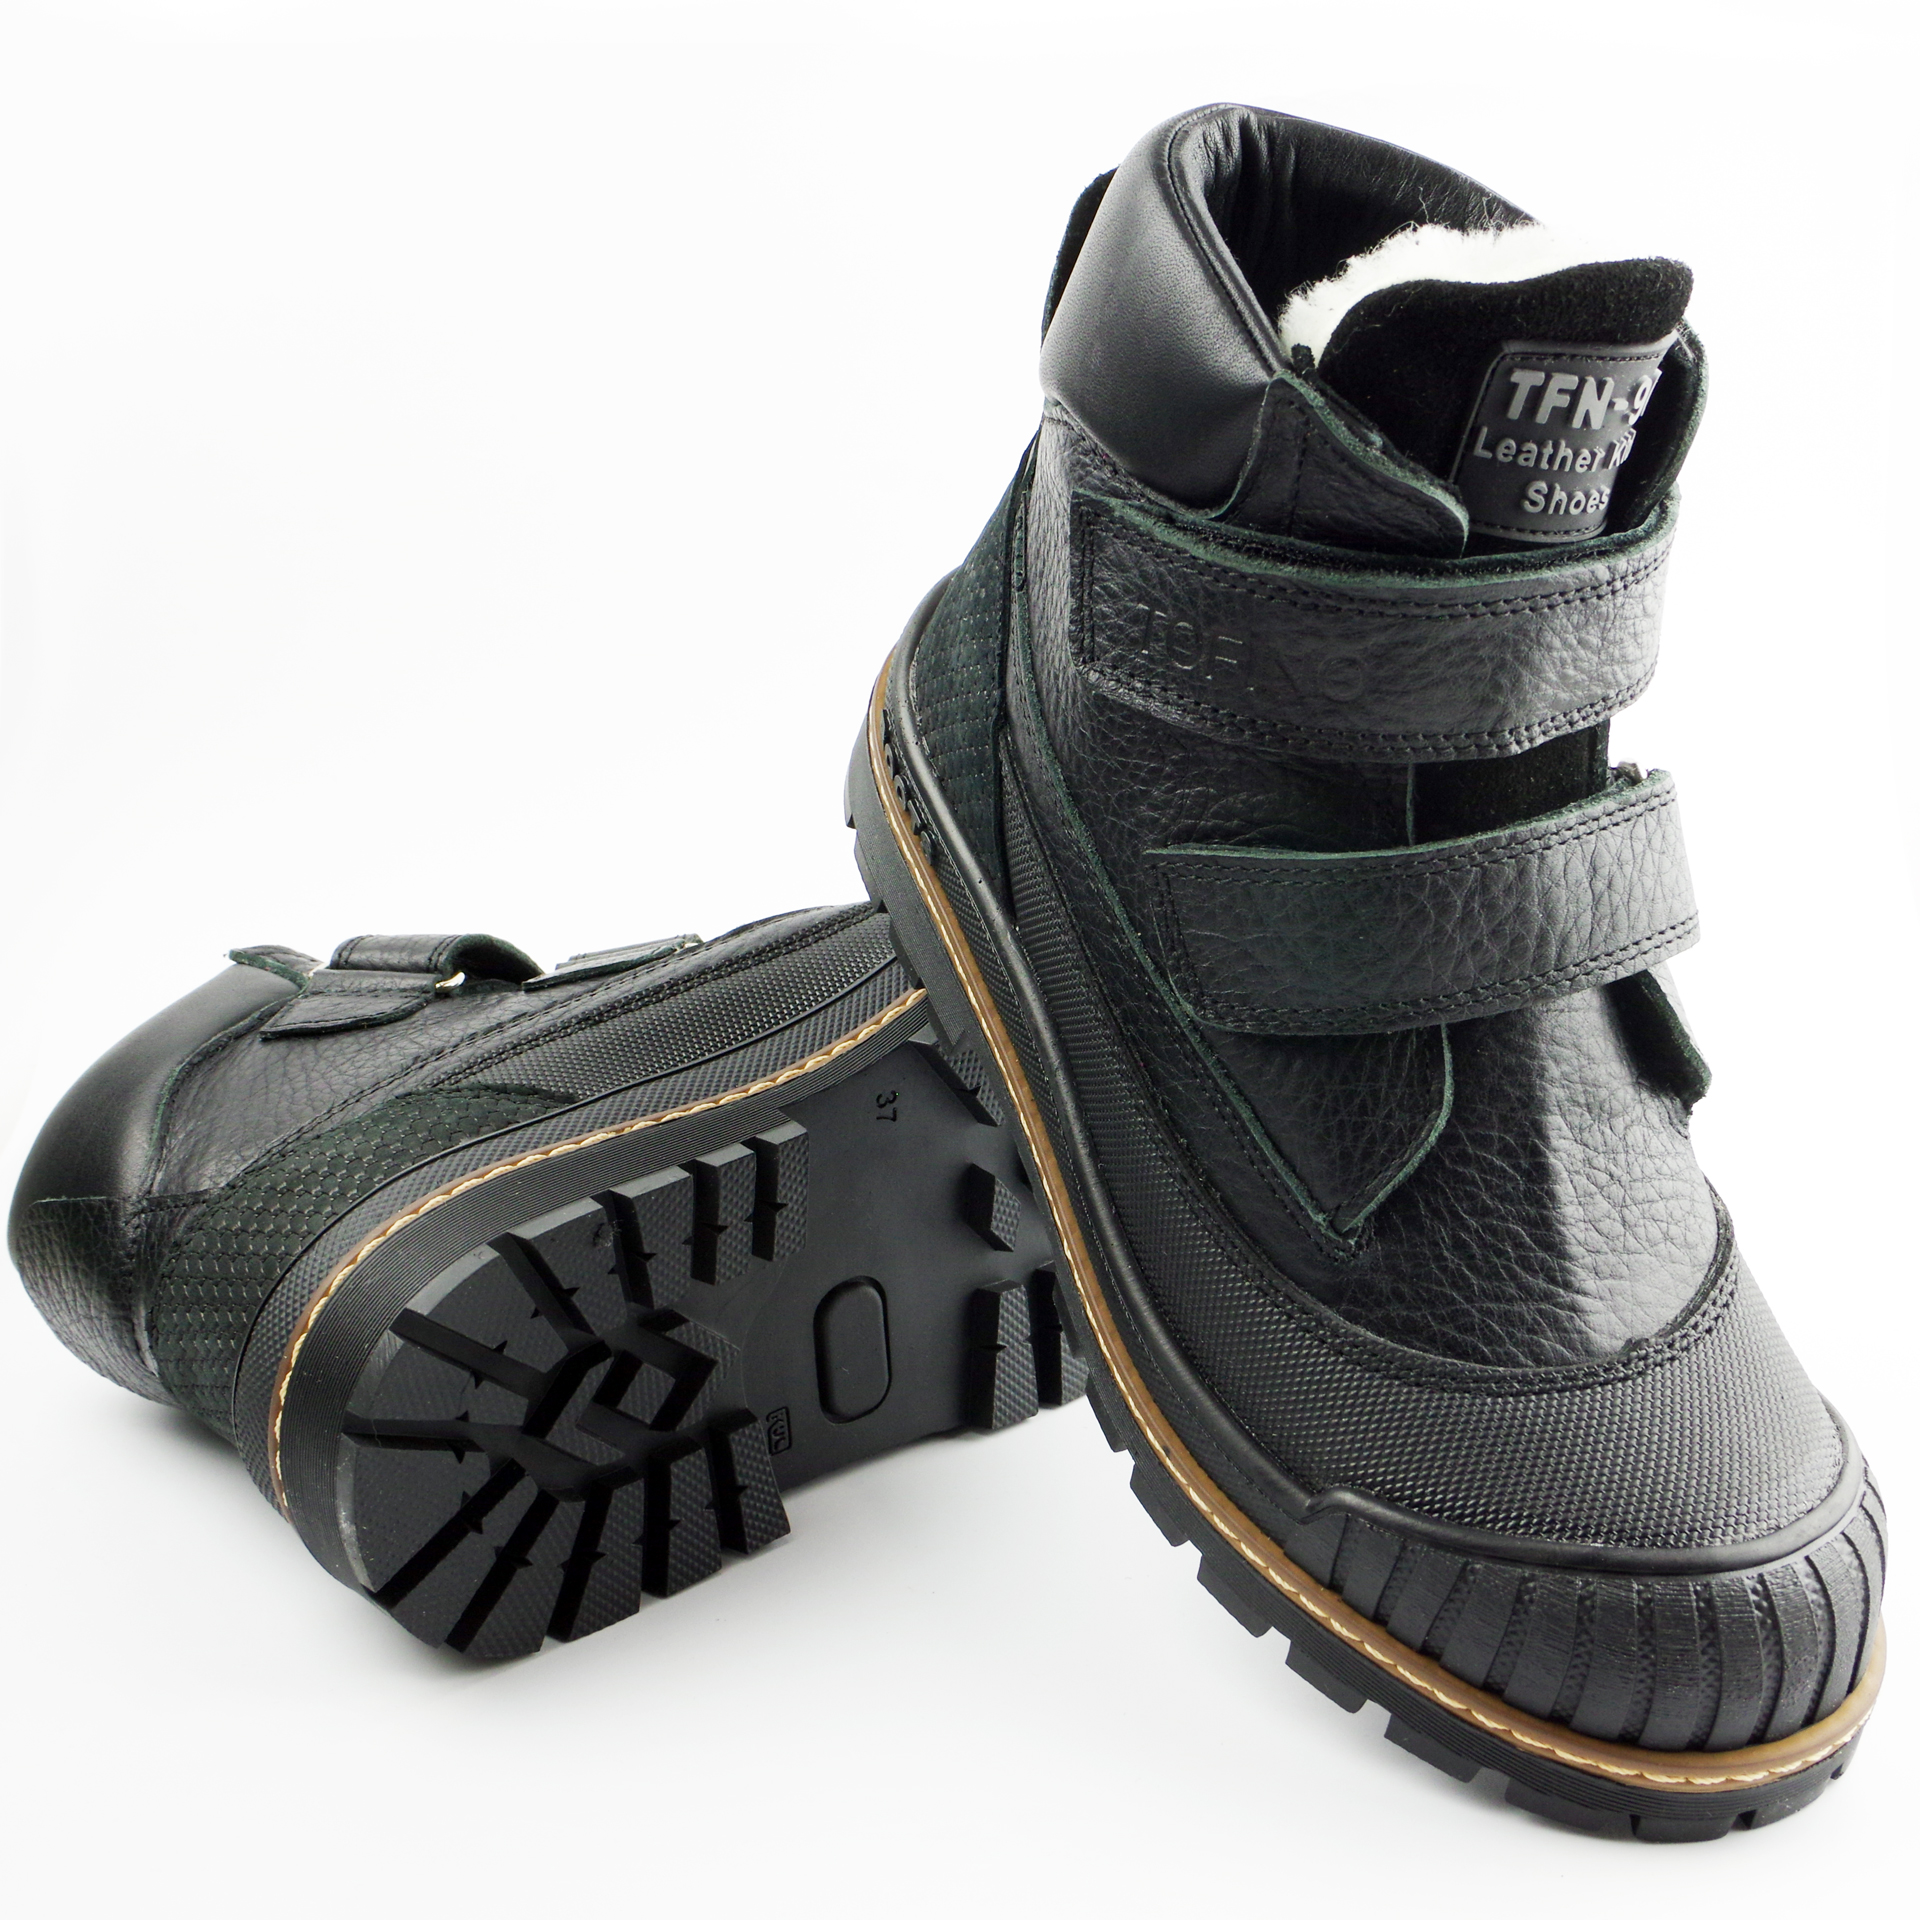 Зимові черевики підліткові (2171) для хлопчика, матеріал Натуральна шкіра, Чорний колір, 37-40 розміри – Sole Kids. Фото 3